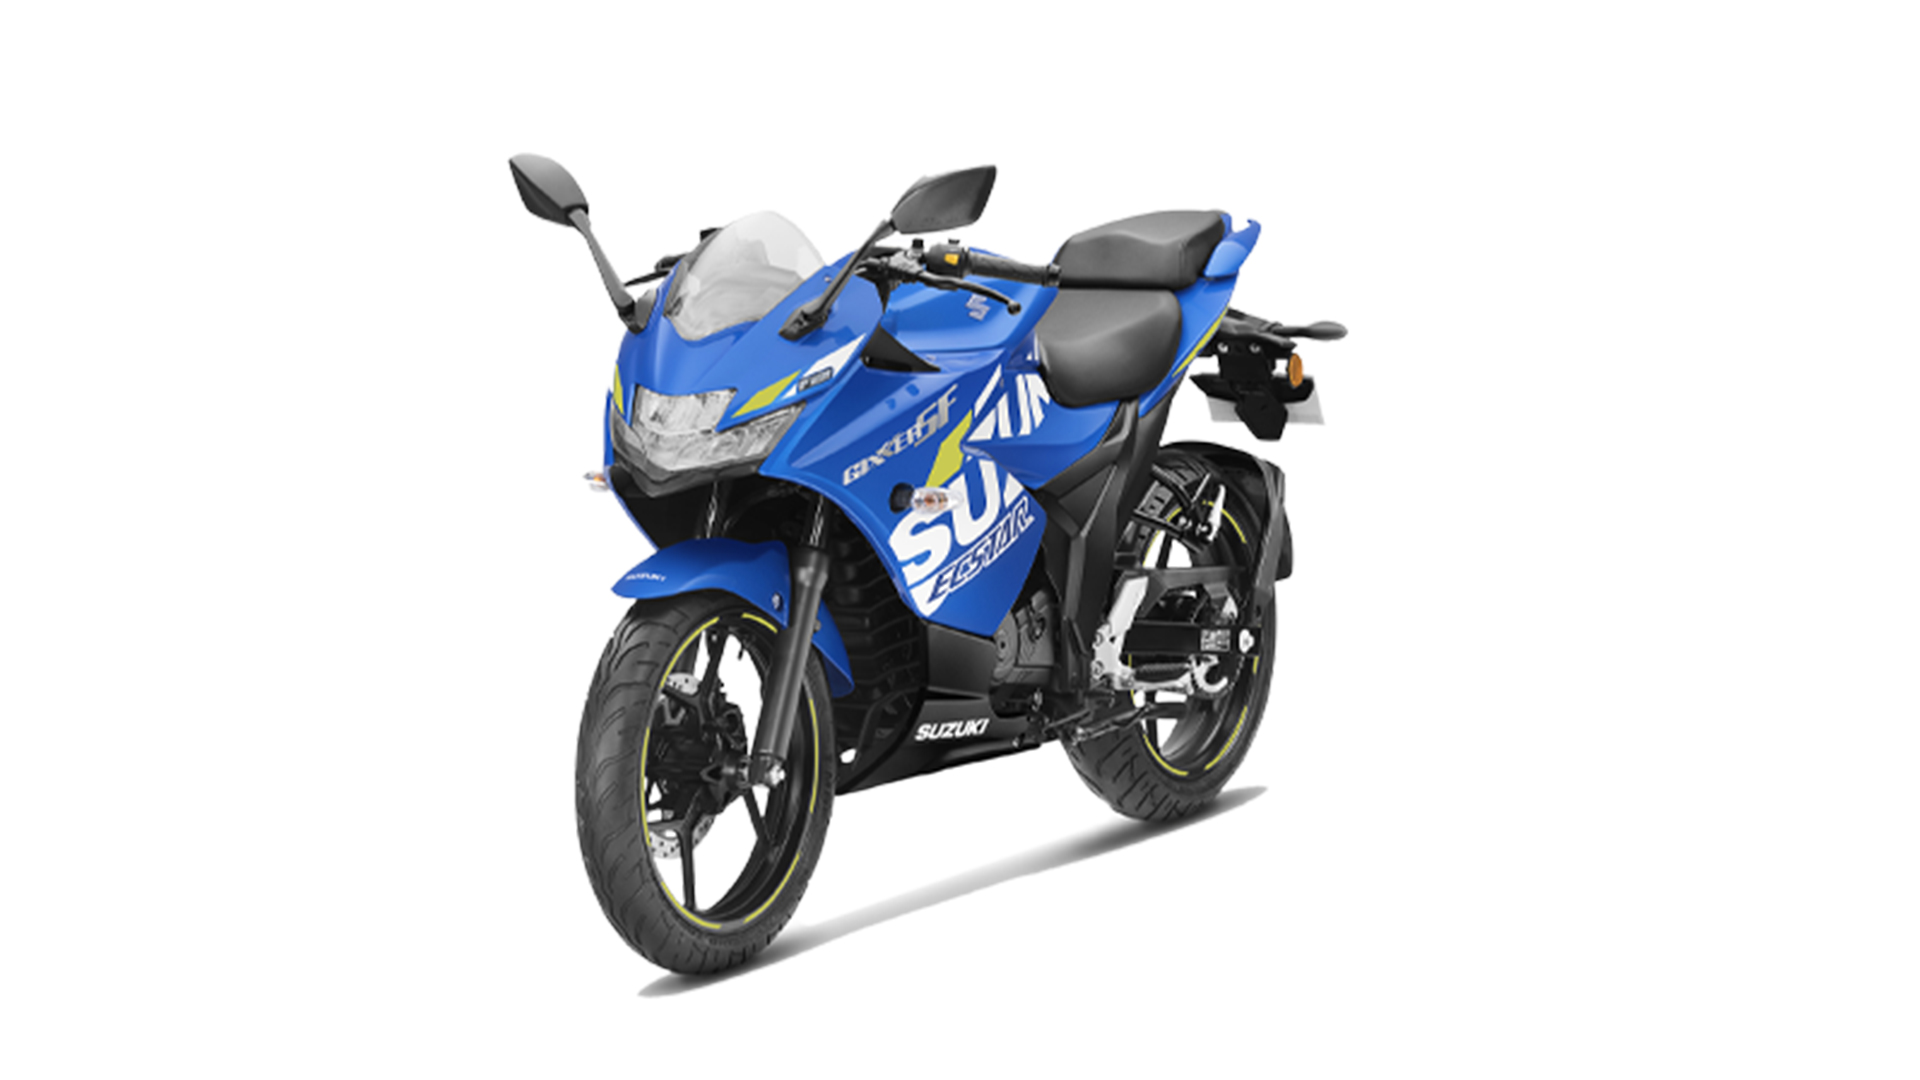 Suzuki Gixxer SF 2020 MotoGP edition